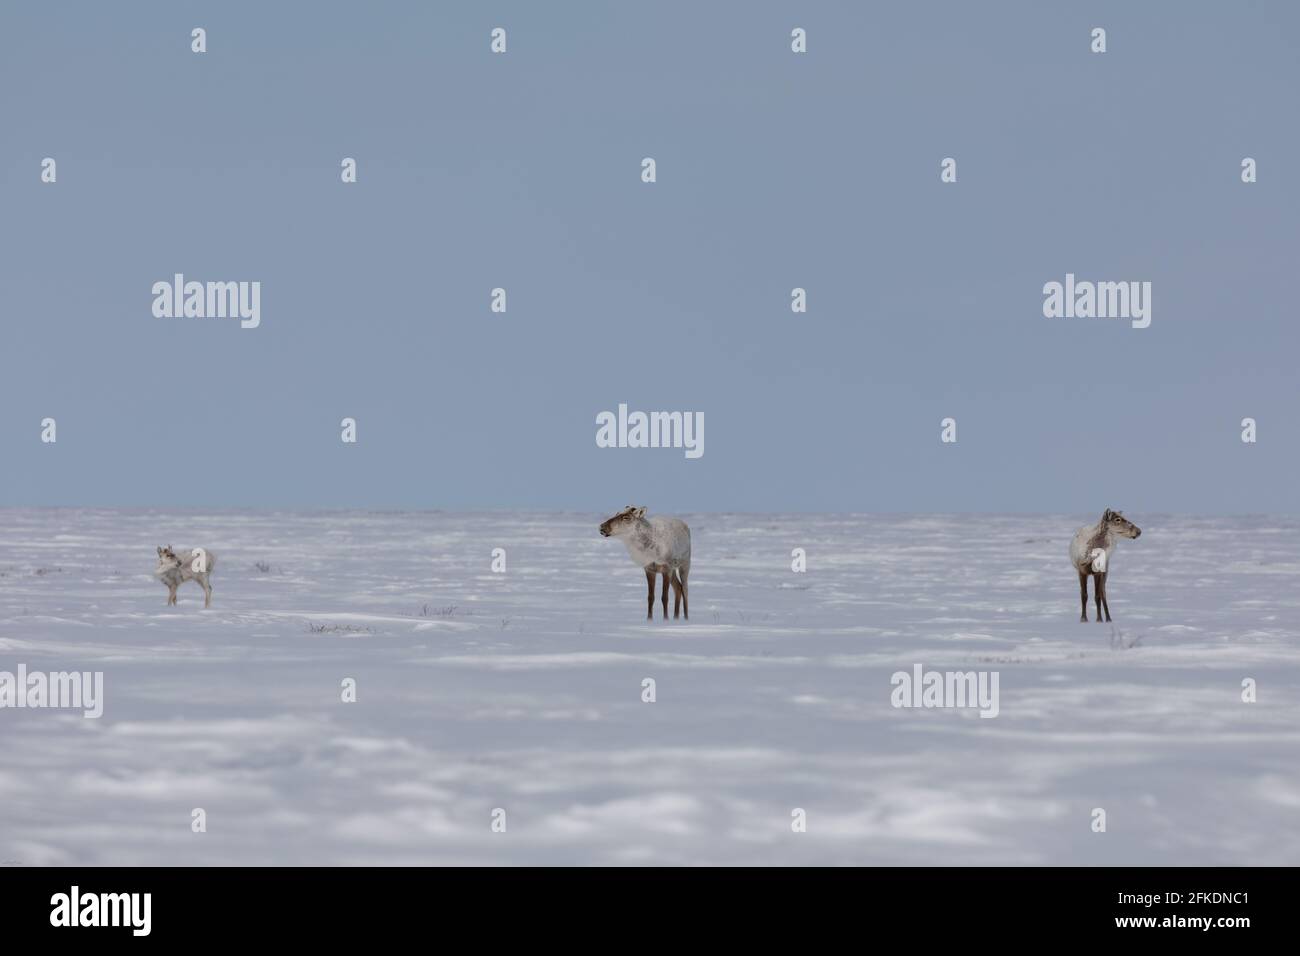 Deux caribous adultes et un jeune caribous de la toundra se trouvaient debout dans la neige de la fin du printemps, près d'Arviat Nunavut Banque D'Images